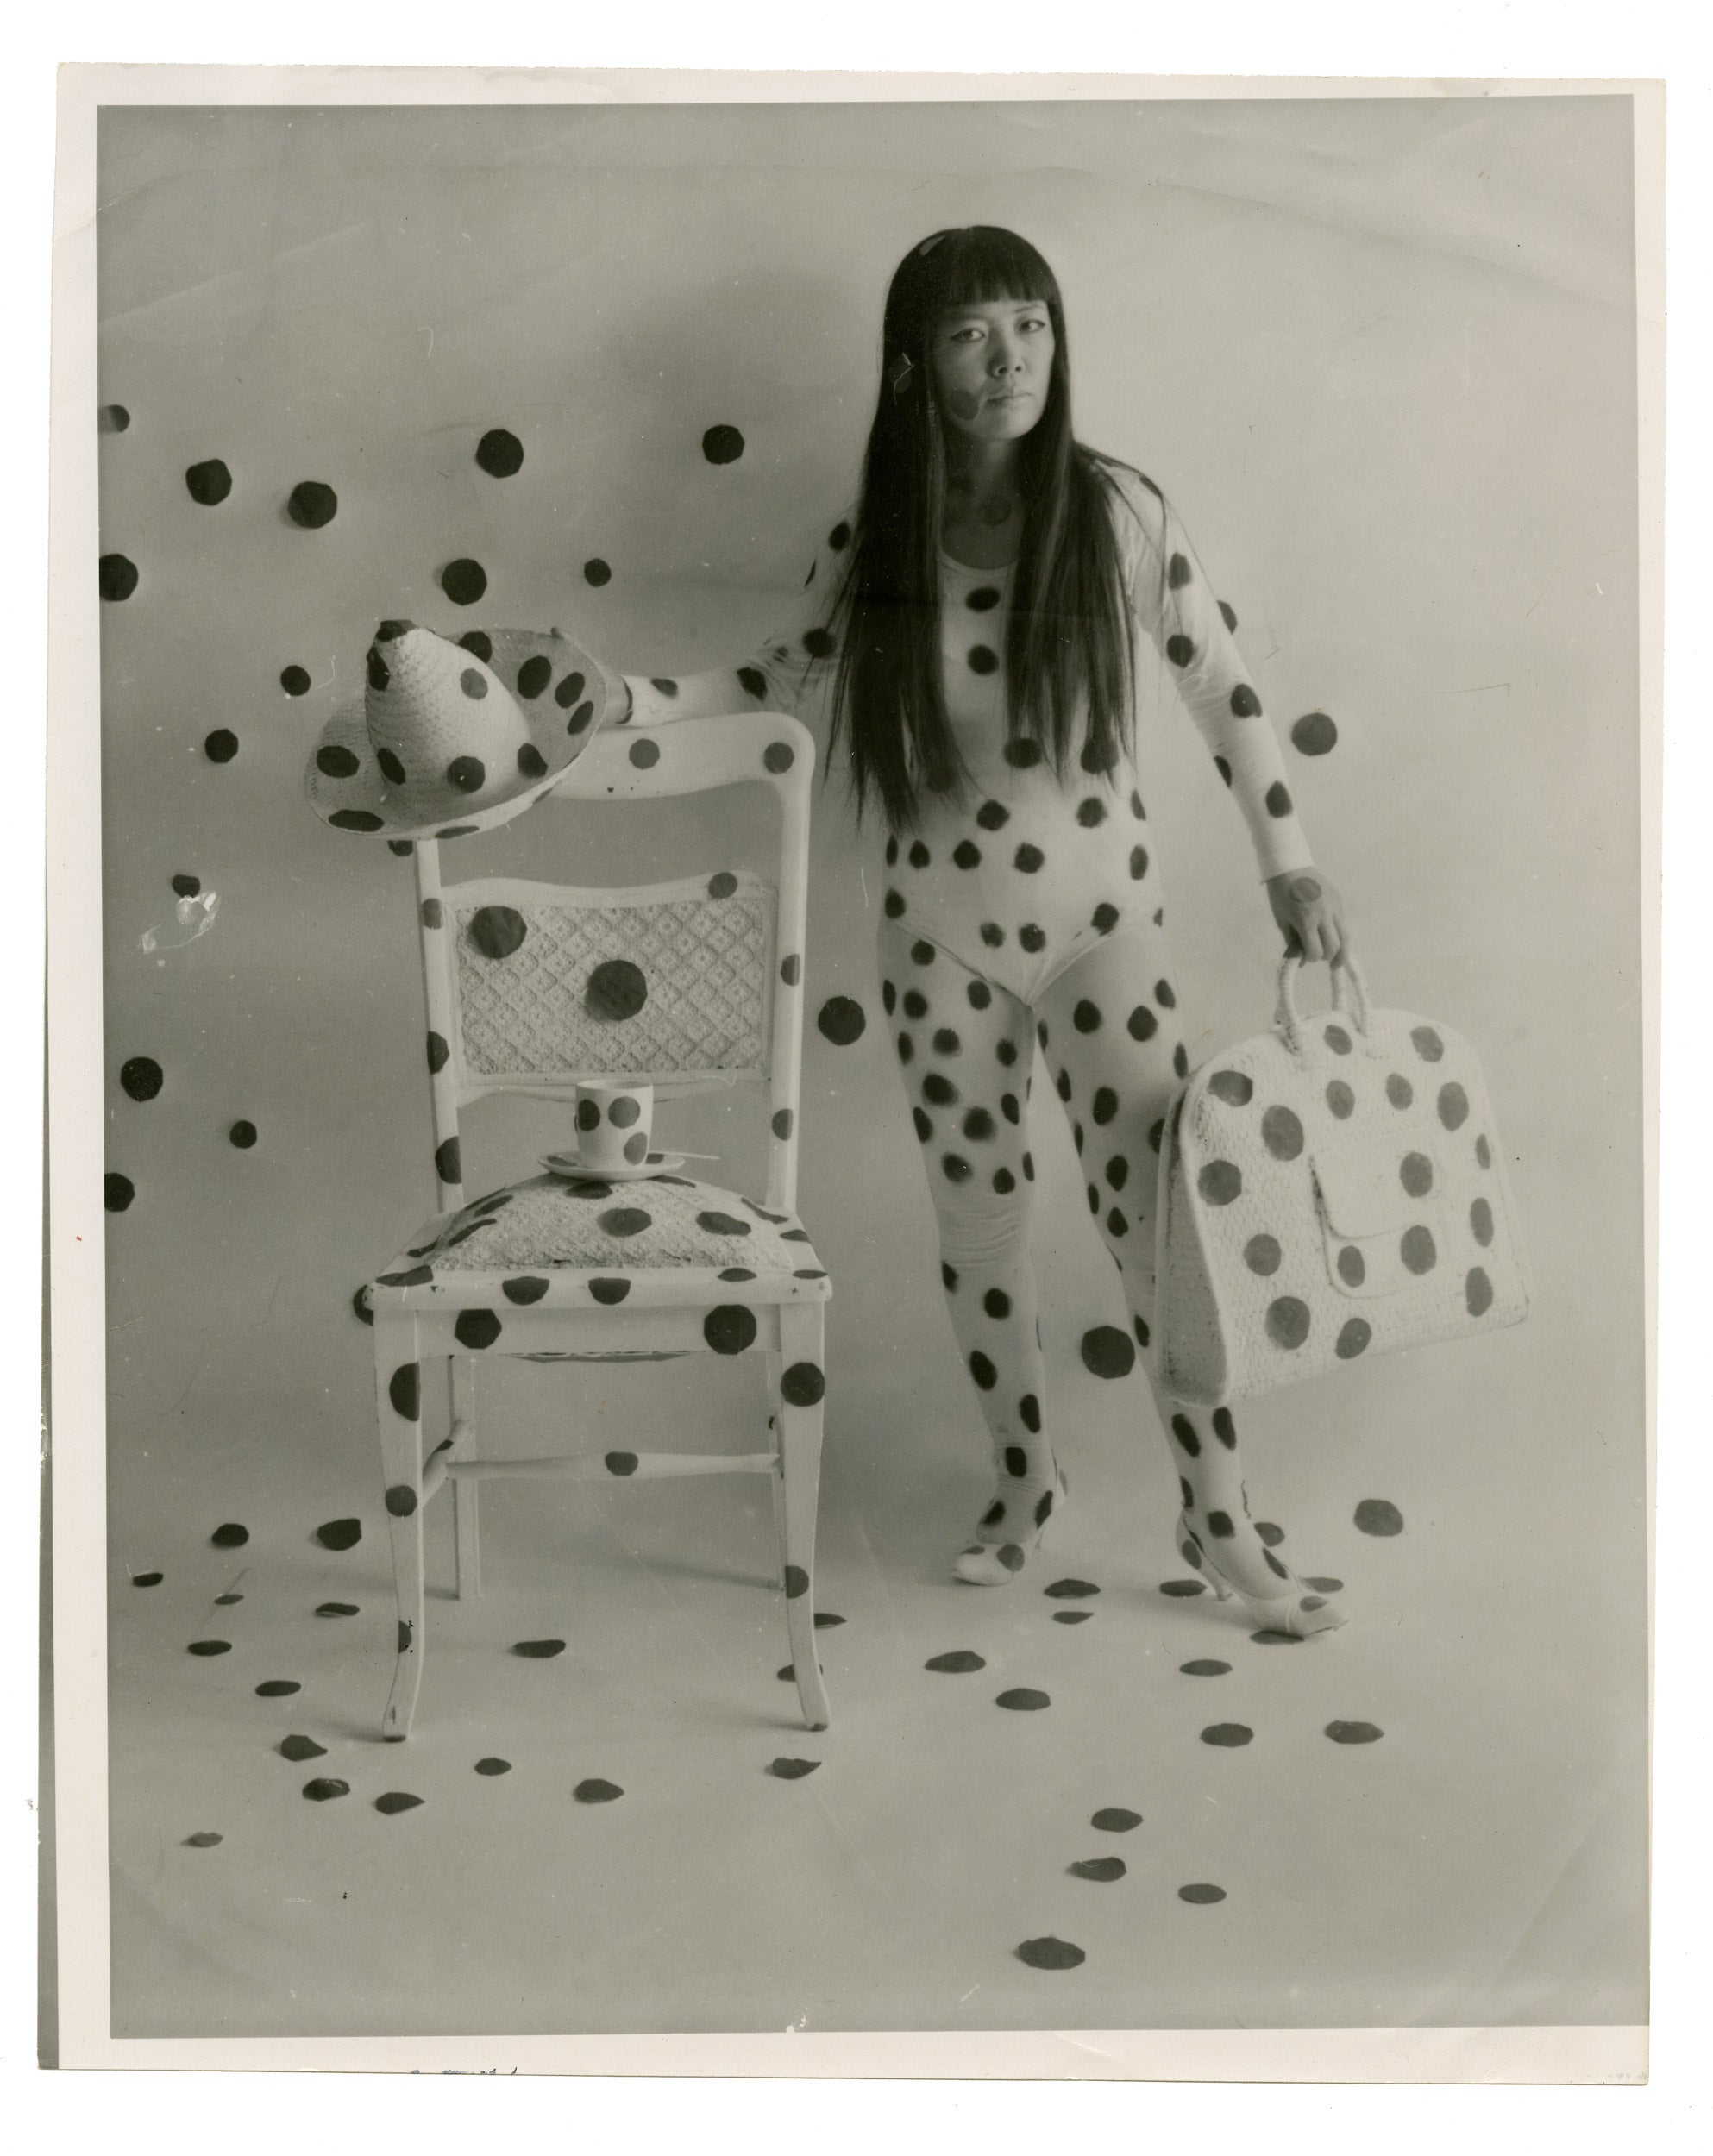 "Self-Obliteration" by Yayoi Kusama, 1968.